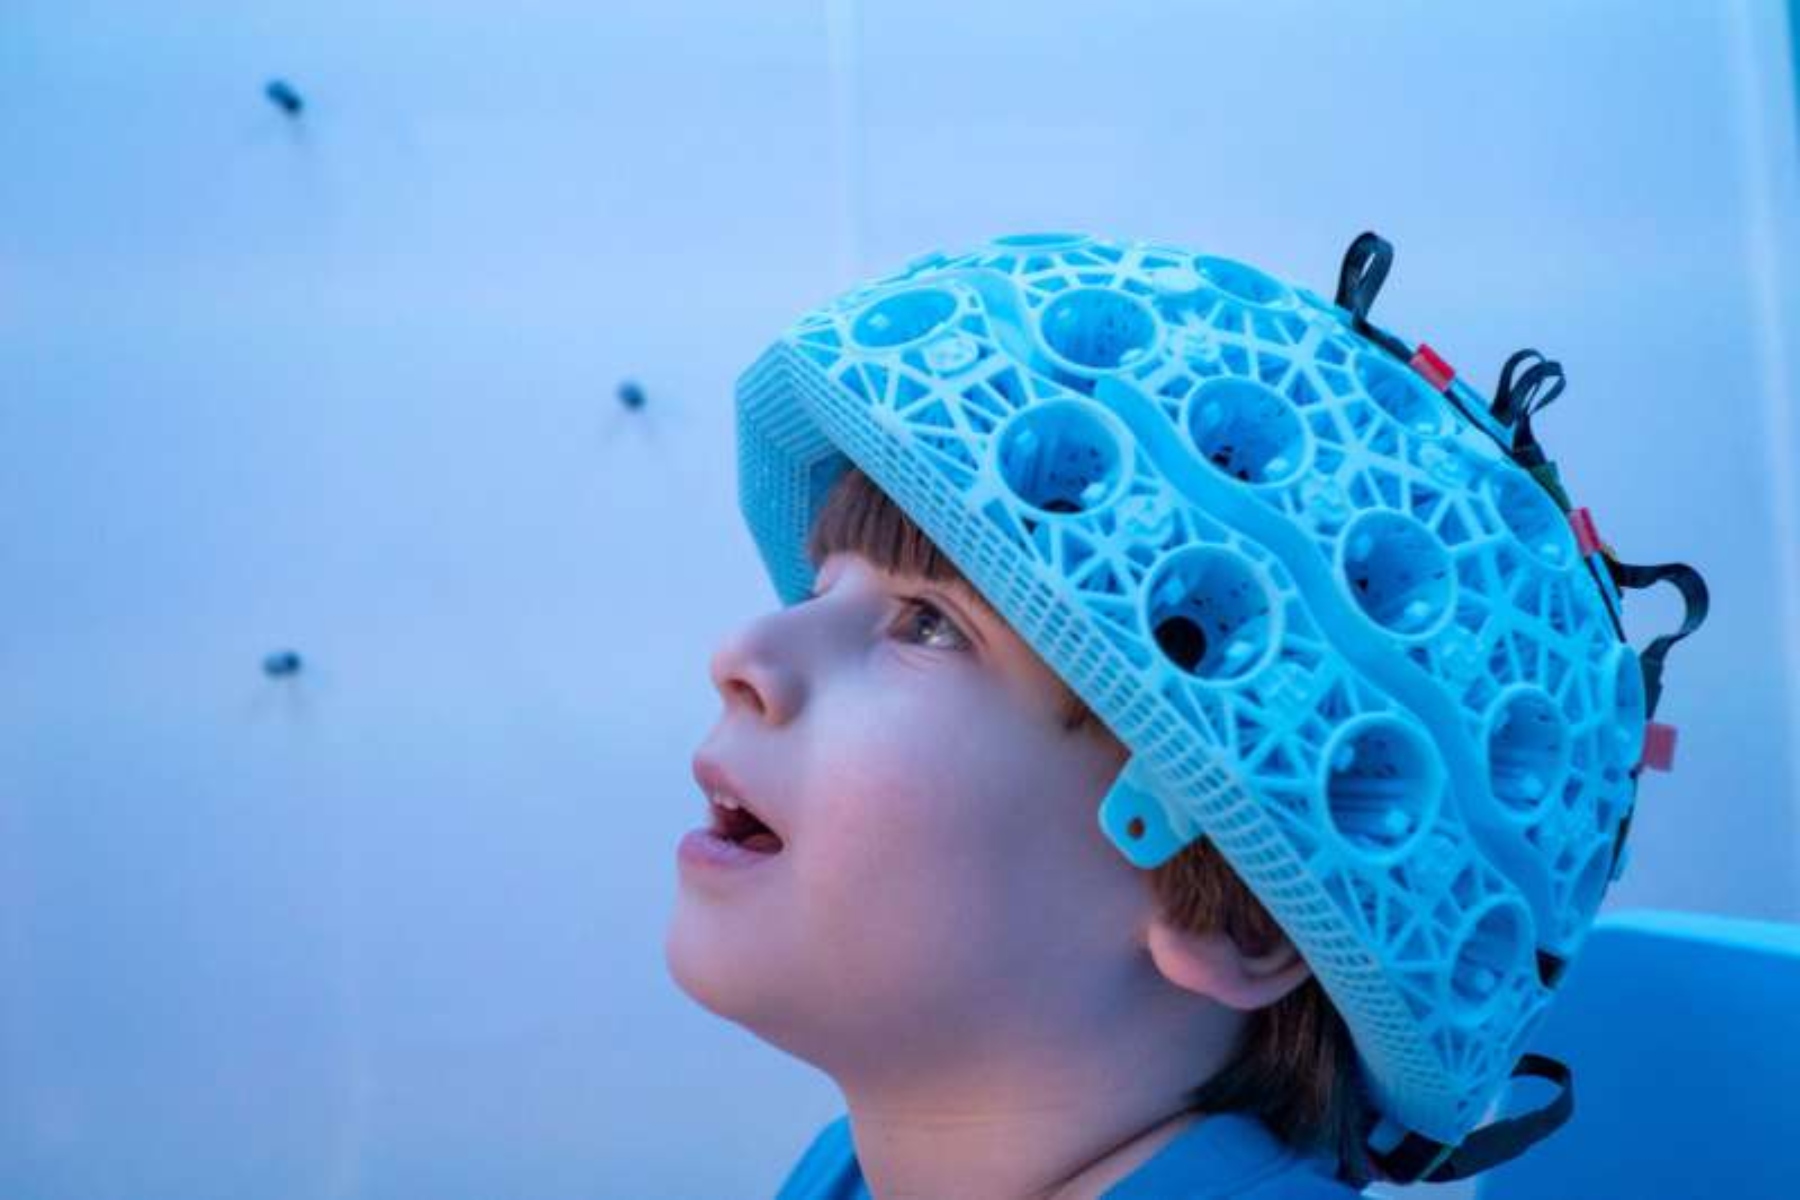 Εγκέφαλος απεικόνιση: Wearable τεχνολογία για τον αναπτυσσόμενο εγκέφαλο των παιδιών